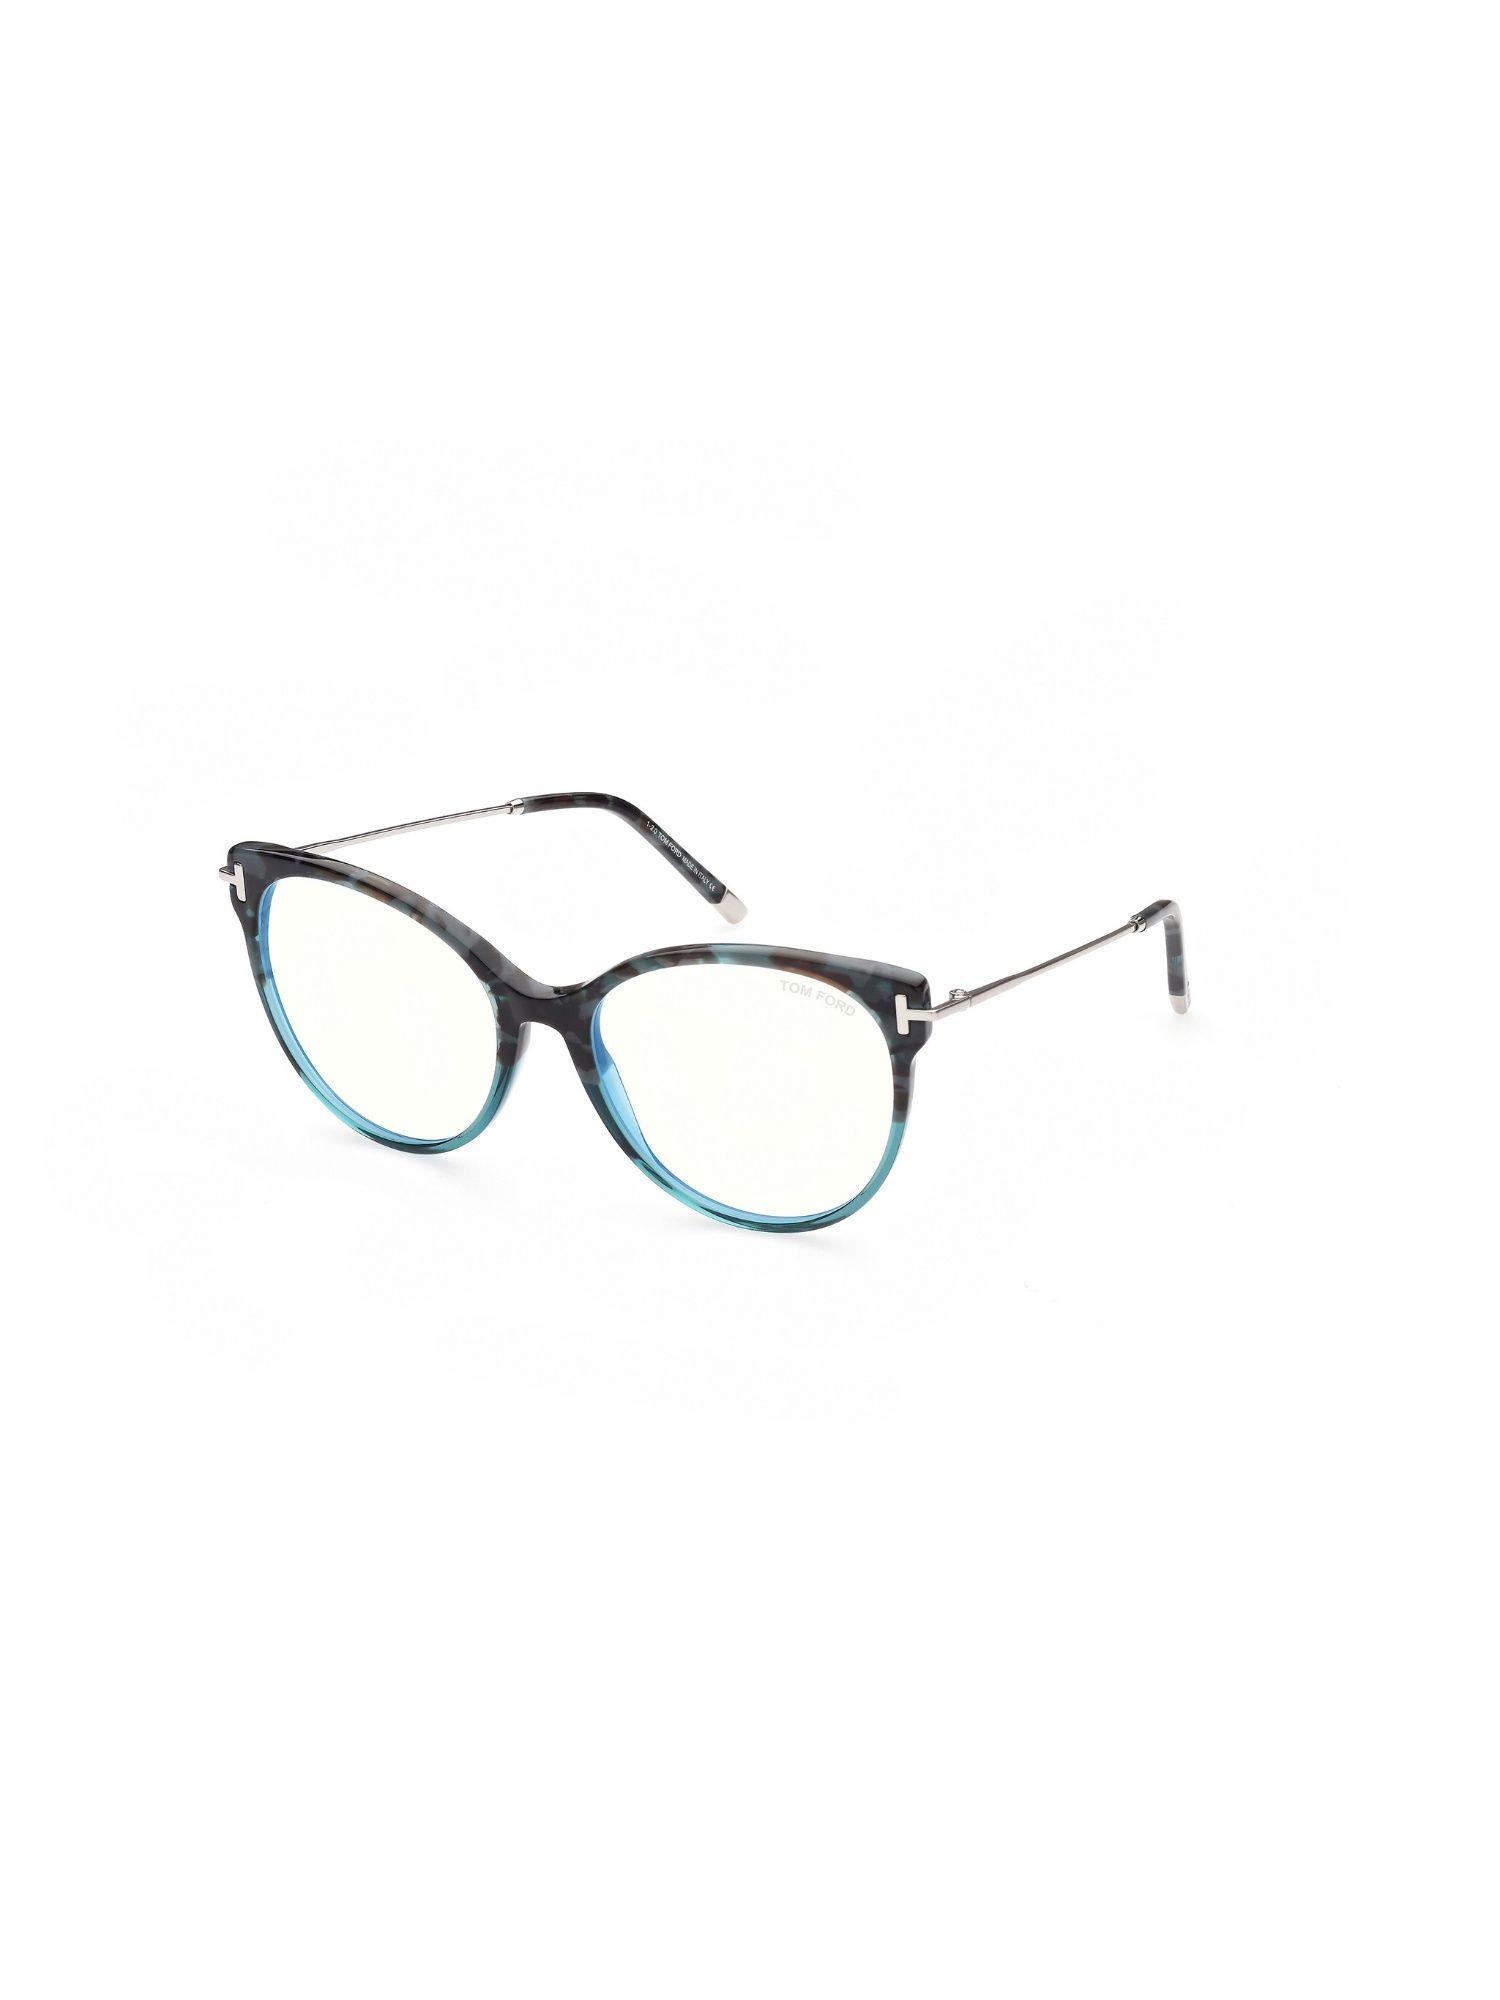 ft5770-b54056 blue block round eye frames for women (54)